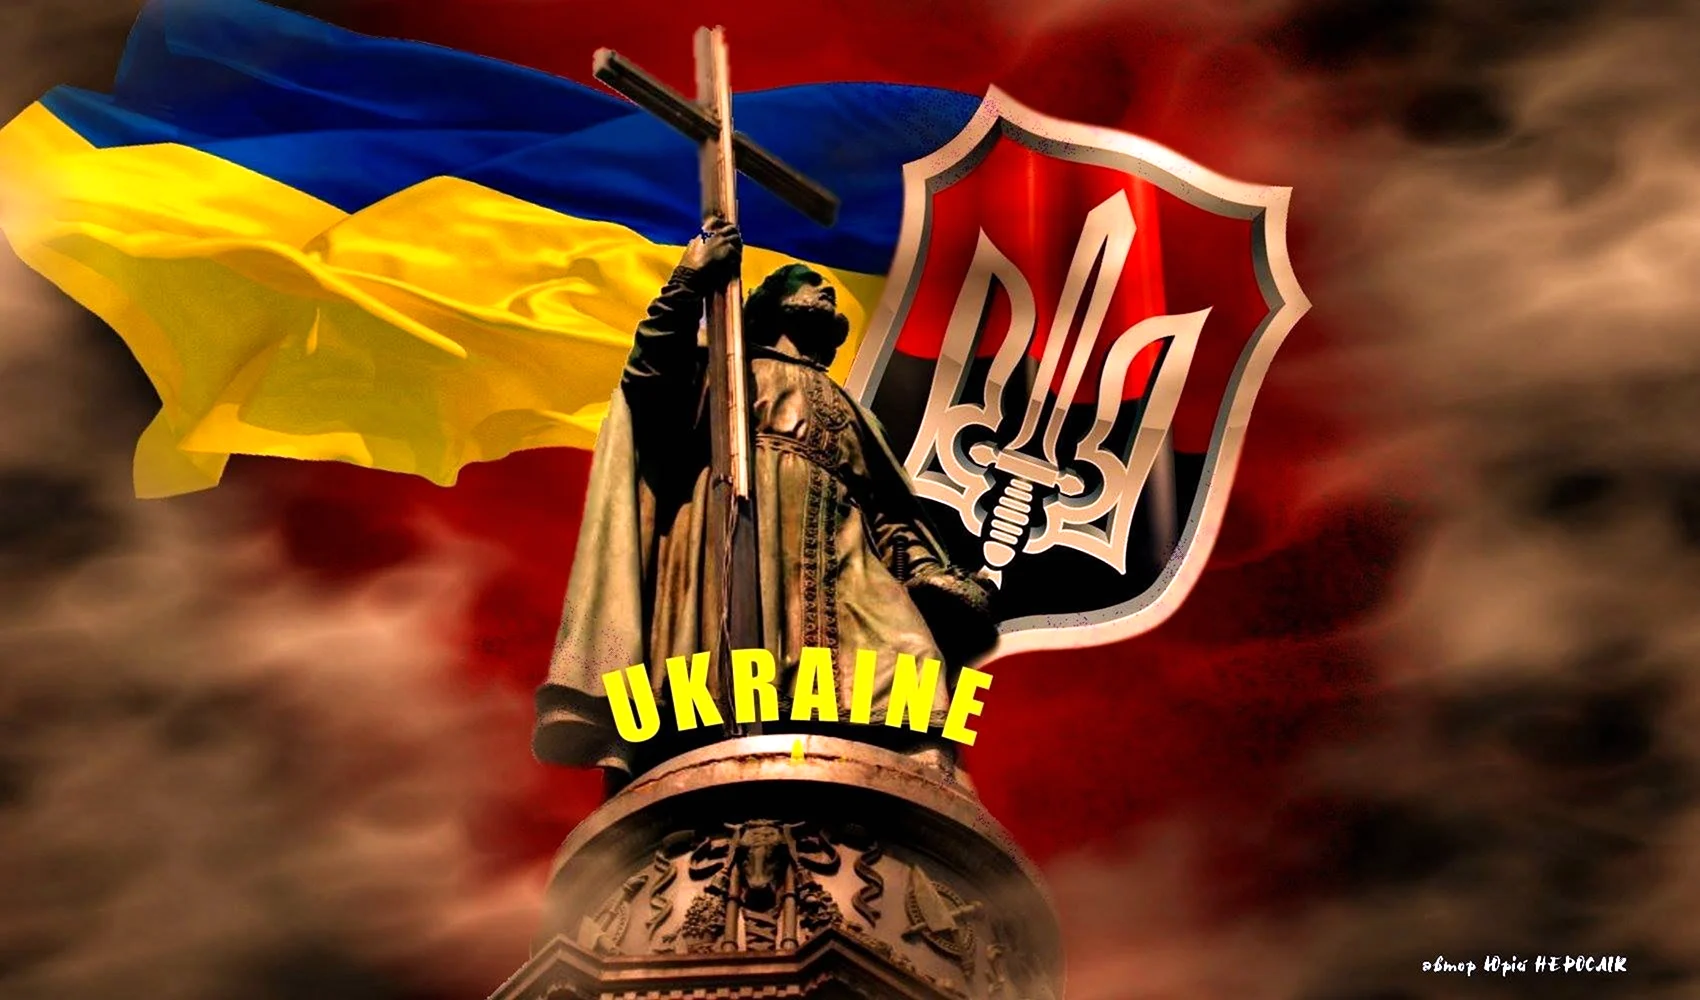 Символика правого сектора Украины